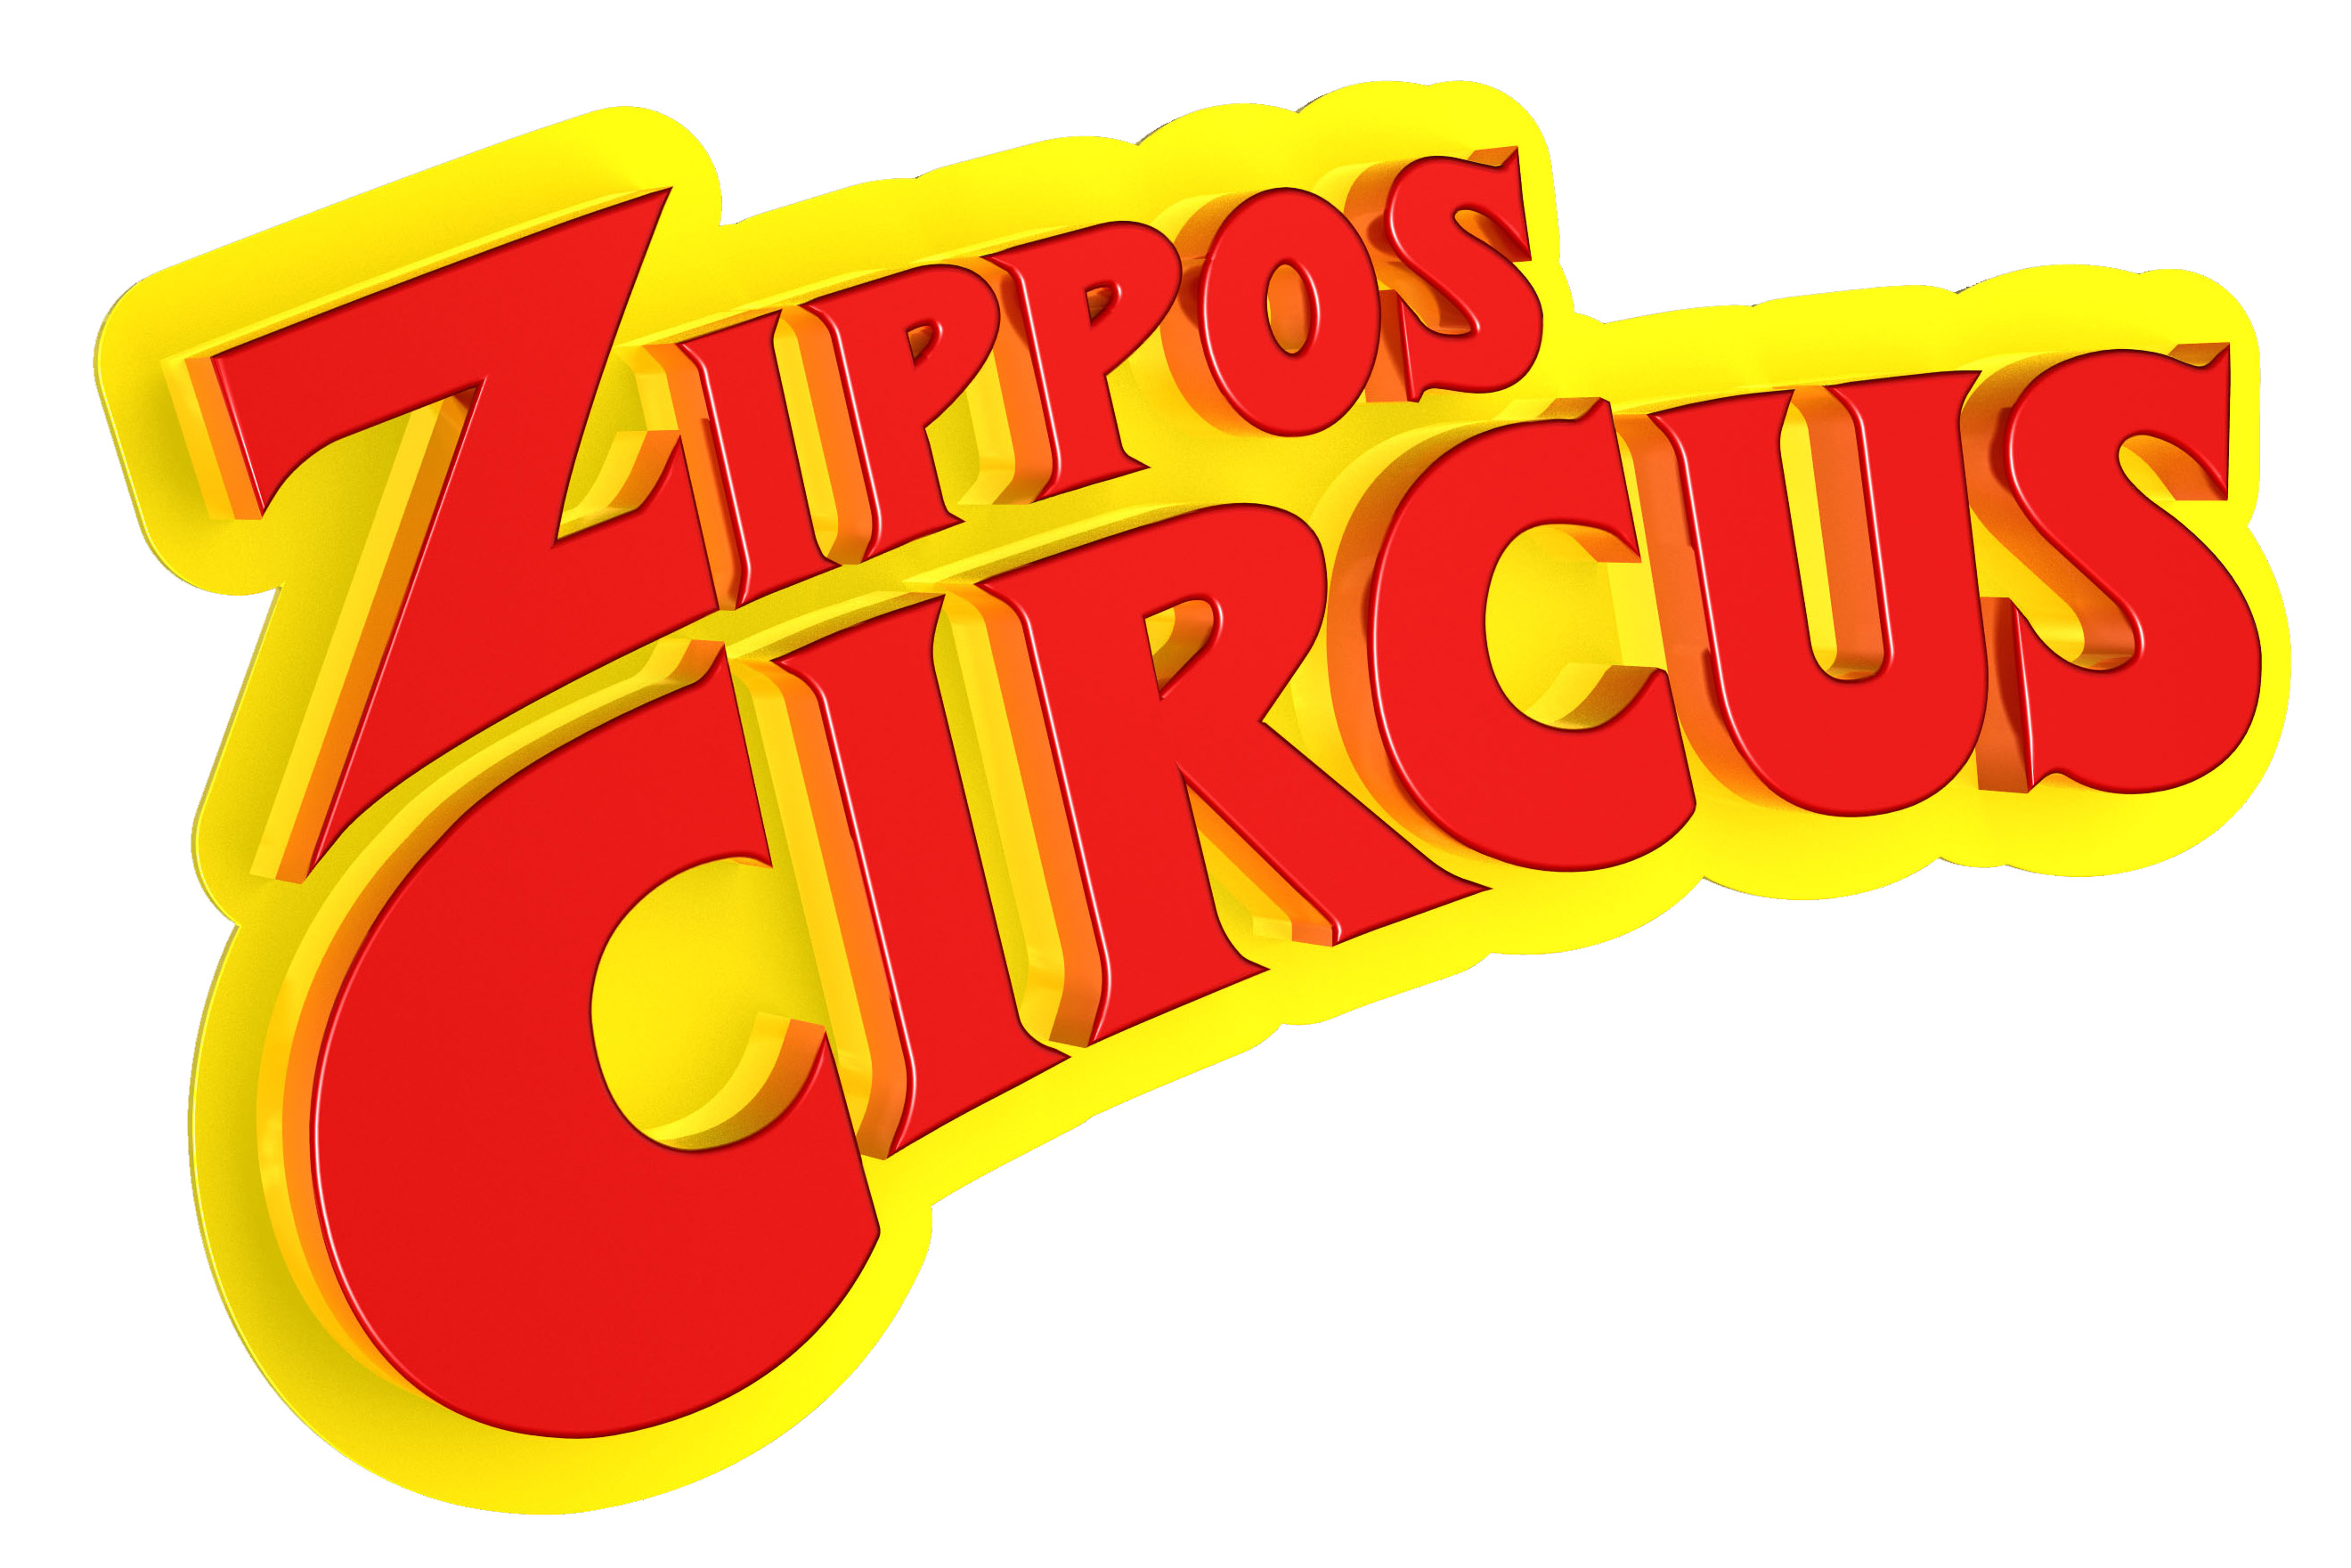 Zippos Circus logo